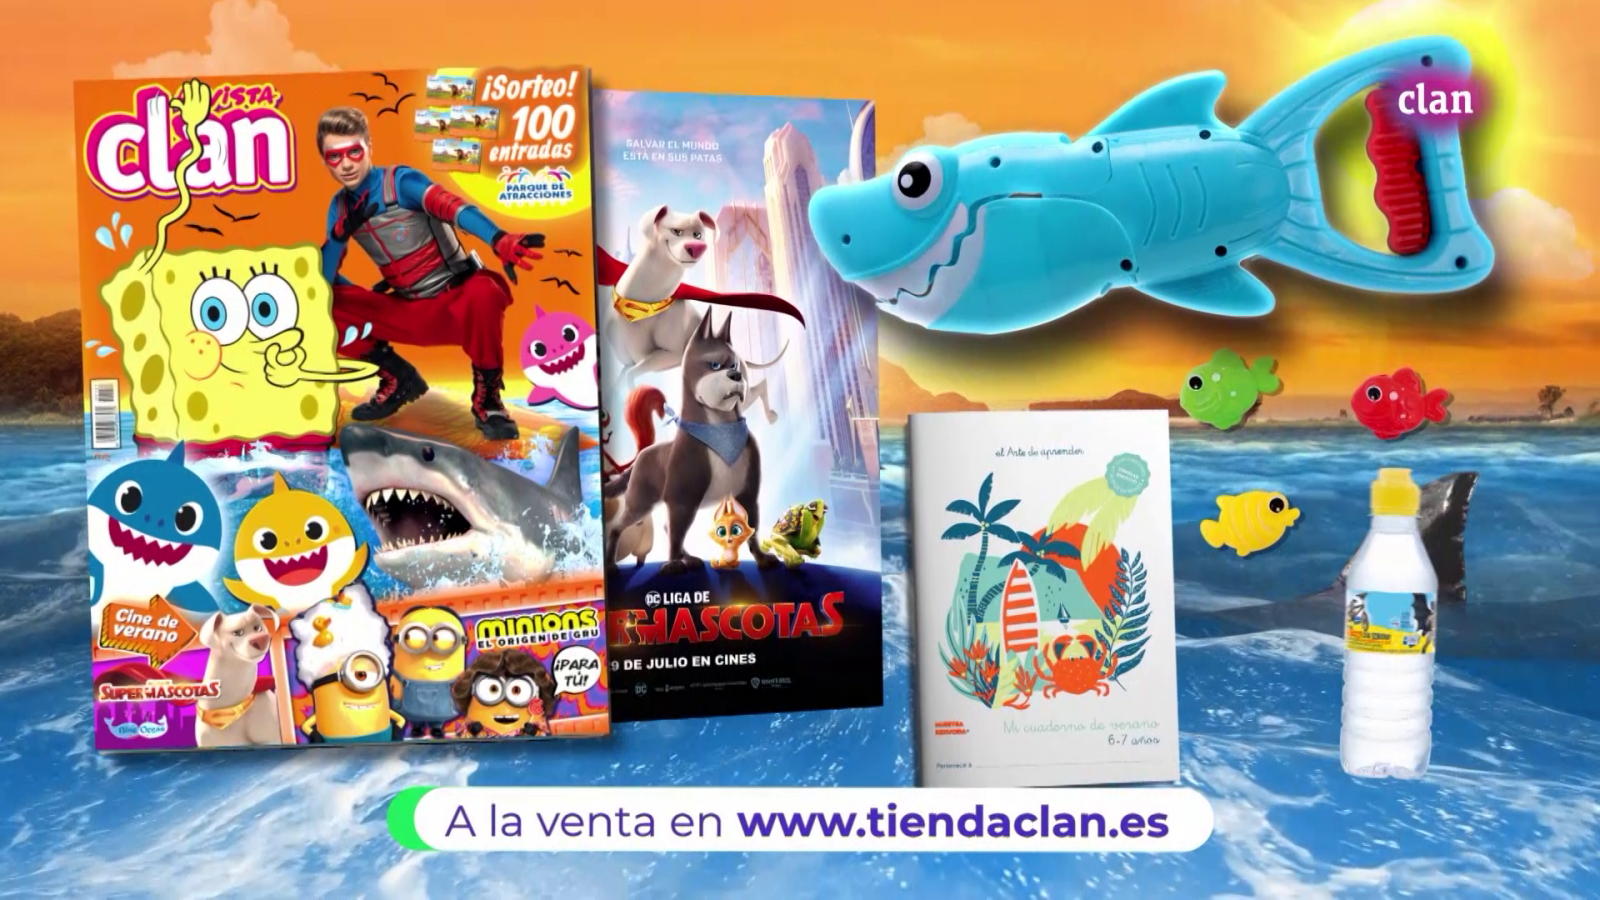 Talentoso cilindro gatito Disfruta el verano con la nueva revista Clan! - Clan TV - RTVE.es